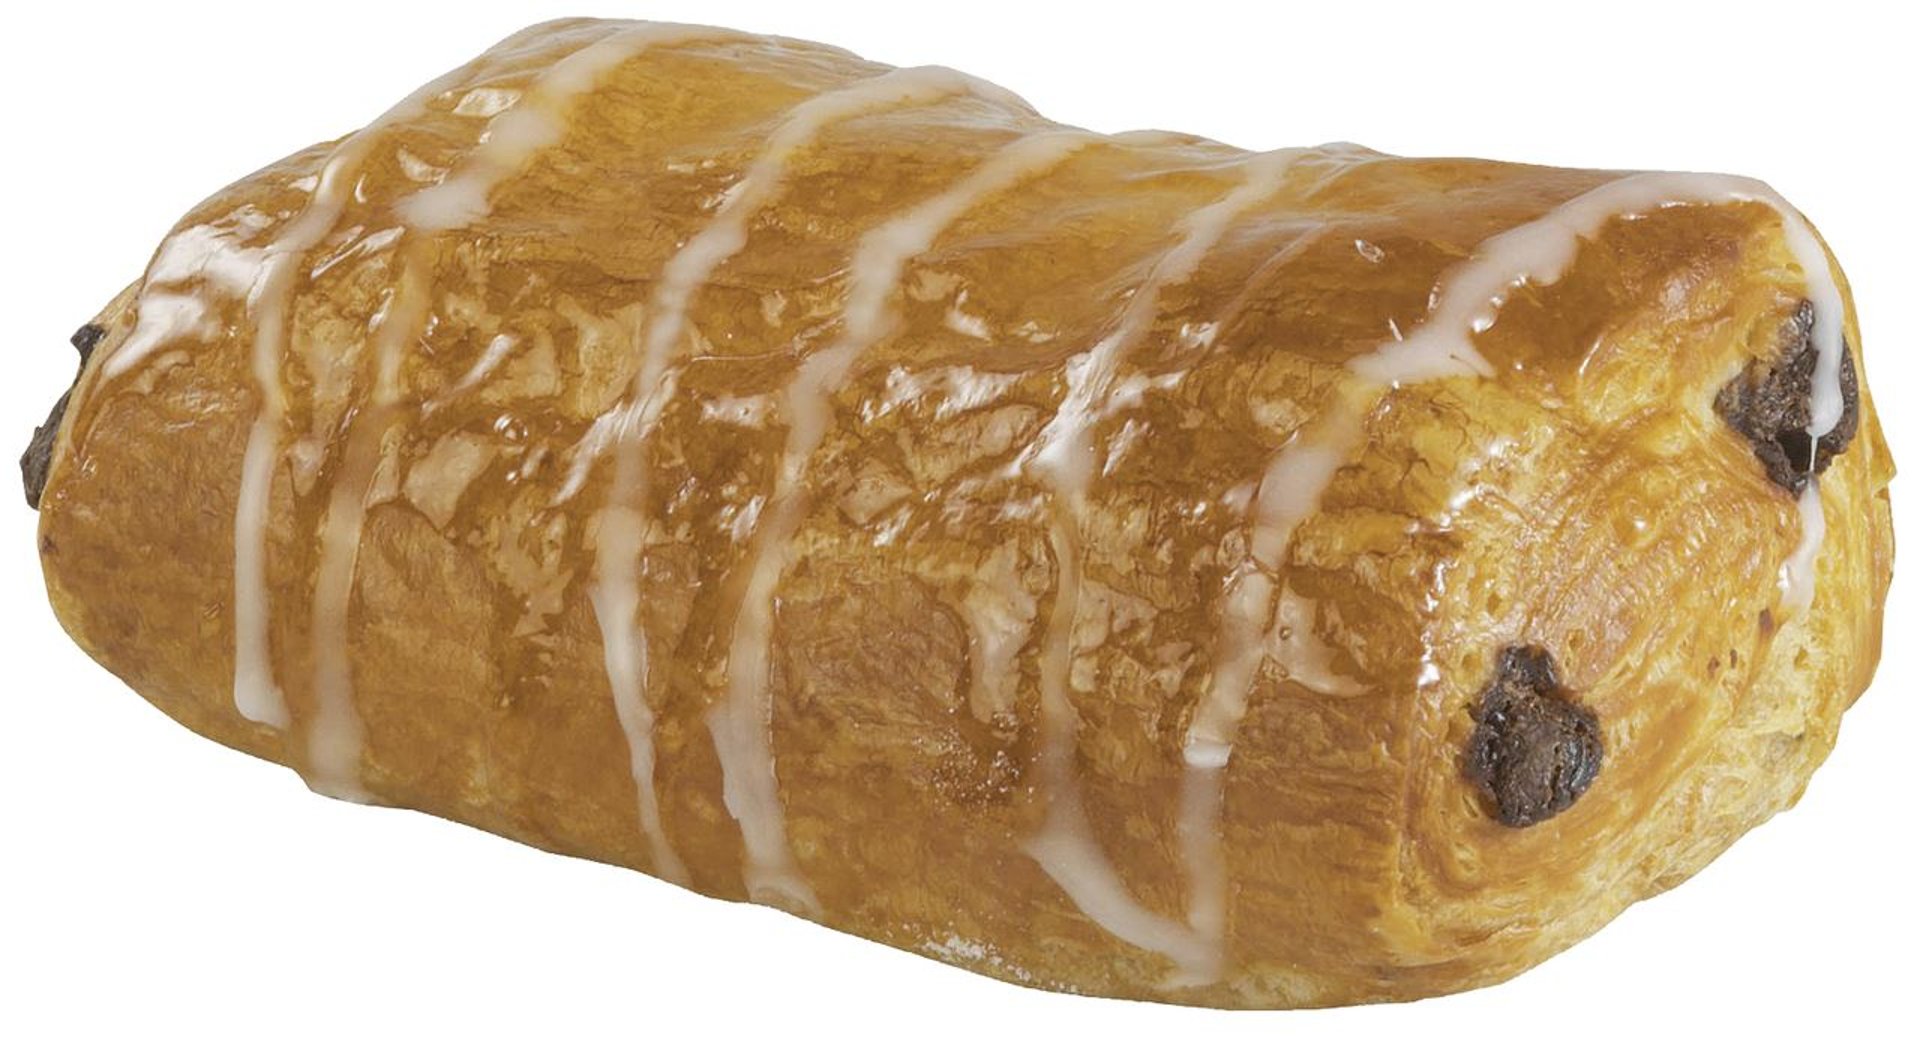 Edna - Premium Butter Schokobrötchen tiefgefroren, Teigling 80 Stück à 75 g - 6 kg Karton